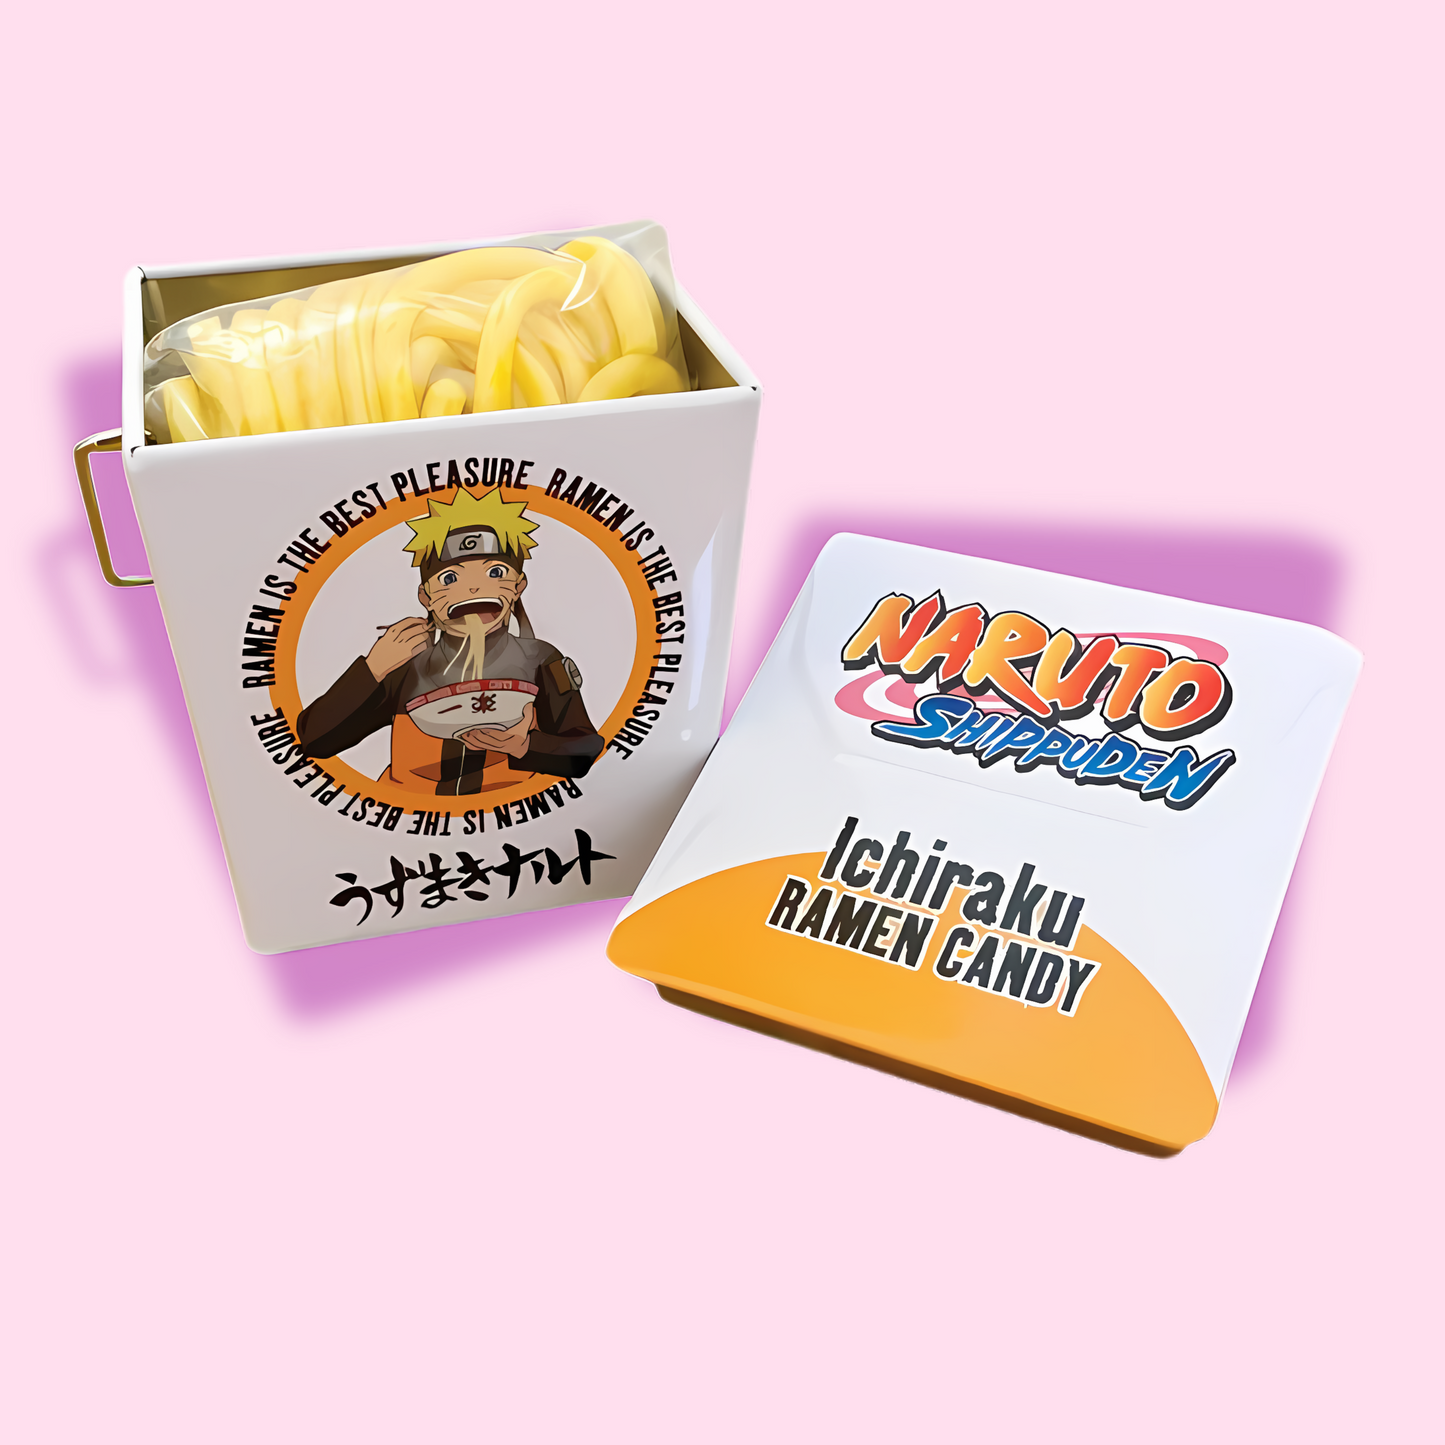 Naruto Shippuden Ichiraku Ramen Candy Tin